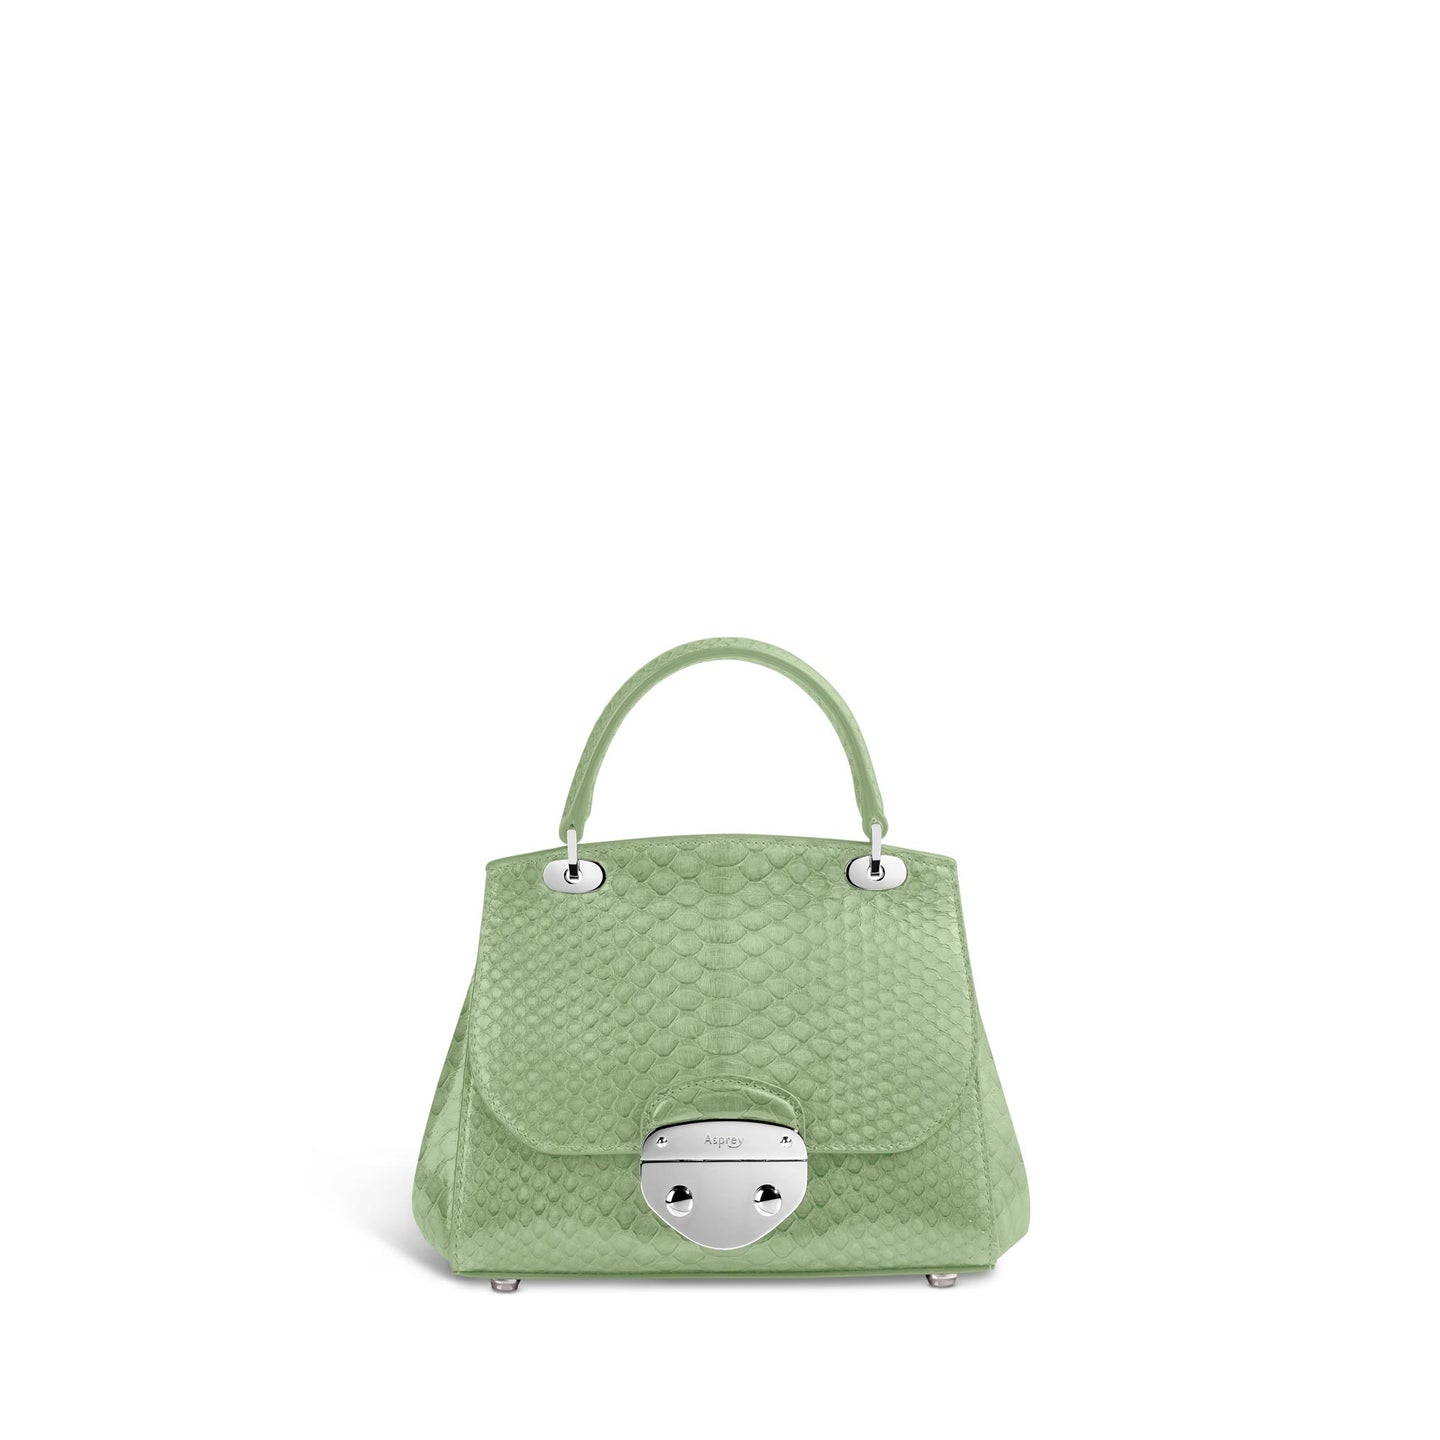 Belle Mini Handbag in Python